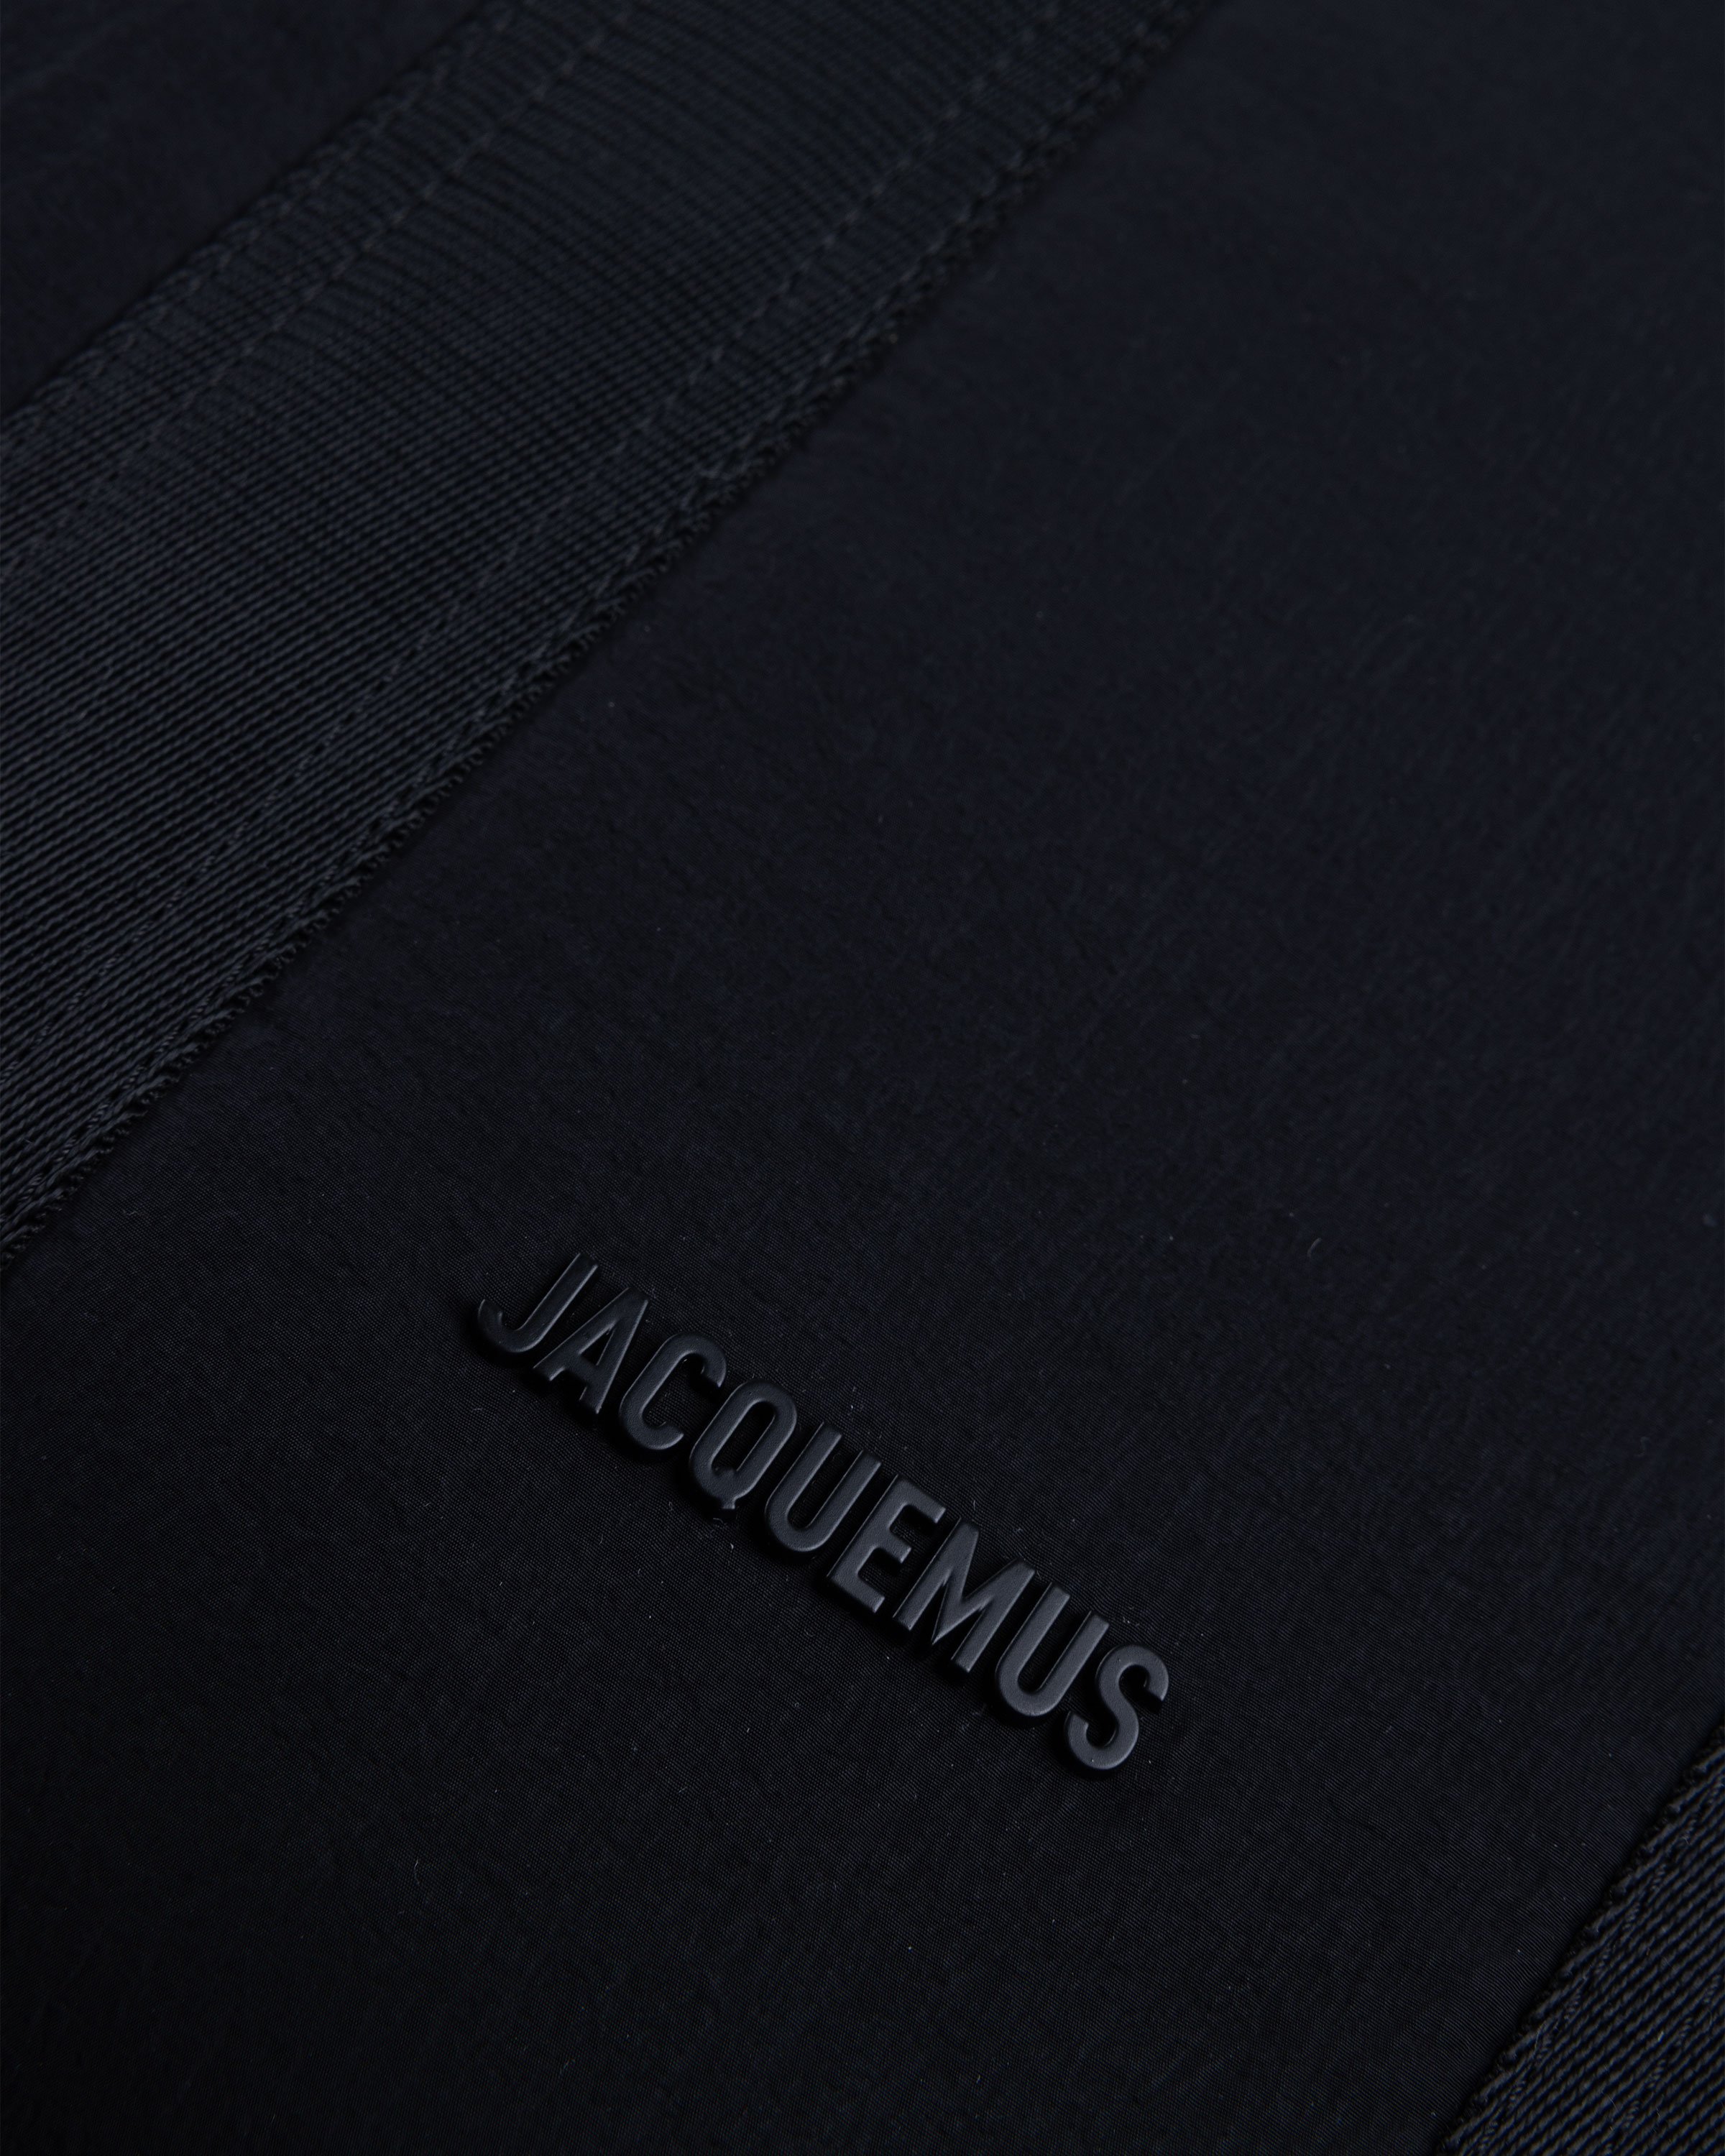 JACQUEMUS - LE CABAS CUERDA - Accessories - Black - Image 3